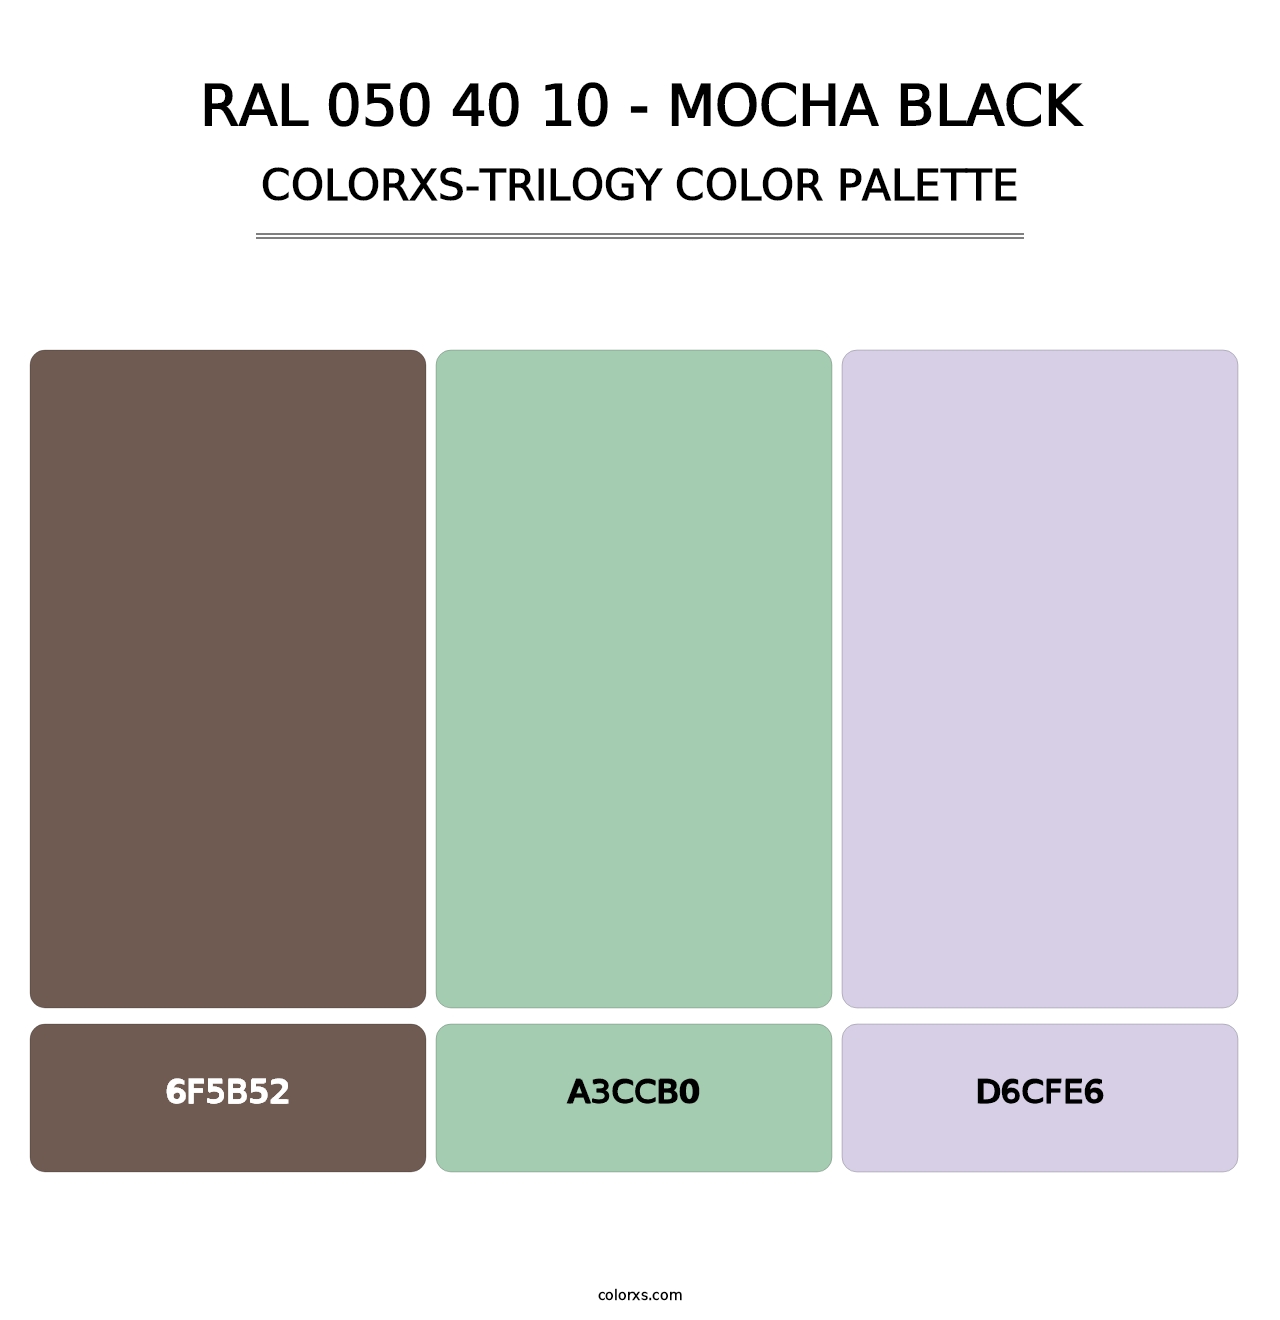 RAL 050 40 10 - Mocha Black - Colorxs Trilogy Palette